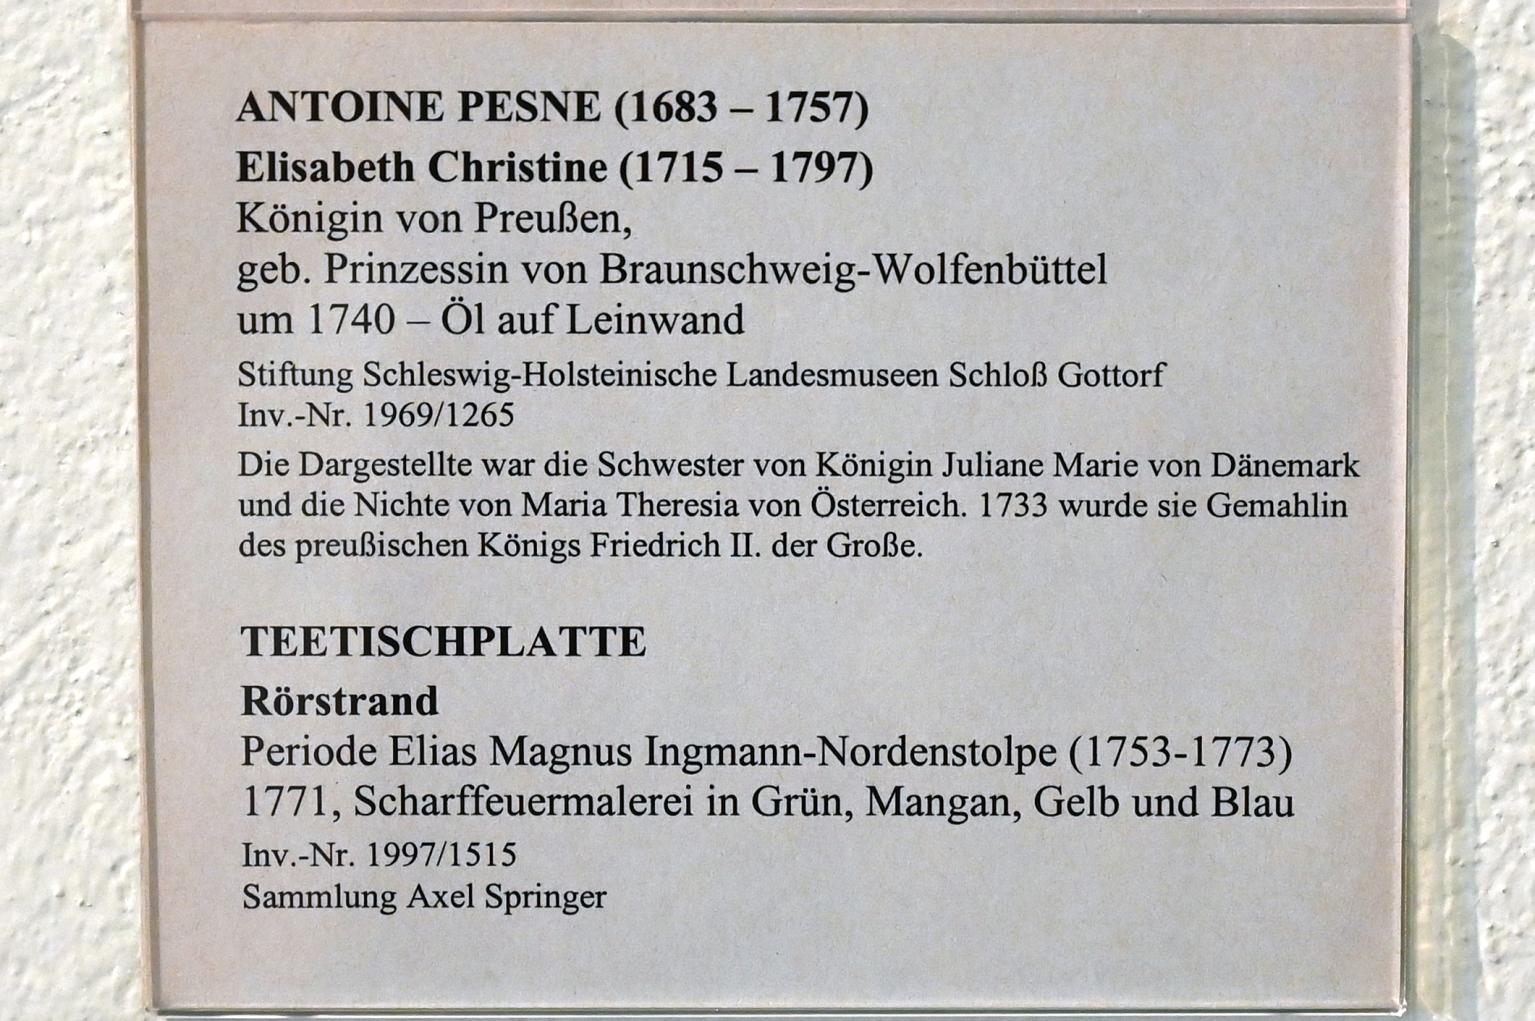 Antoine Pesne (1710–1755), Elisabeth Christine (1715-1797), Königin von Preußen, Schleswig, Landesmuseum für Kunst und Kulturgeschichte, Saal 32, um 1740, Bild 2/2